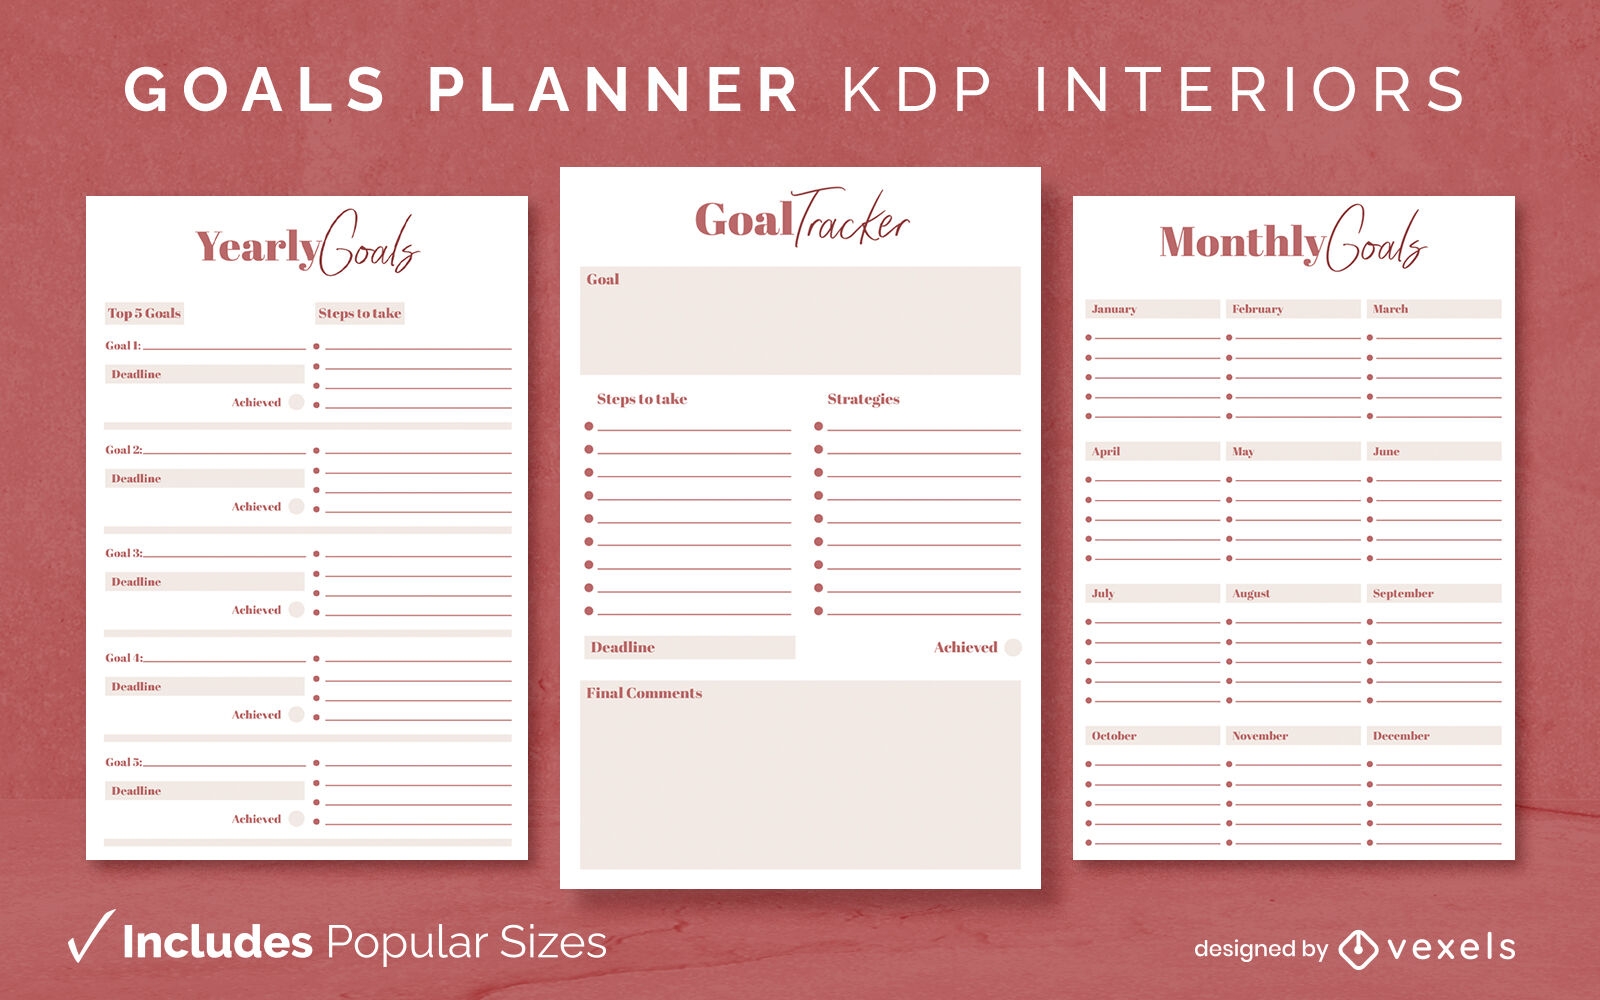 Plantilla de planificador de objetivos interior KDP anual/mensual